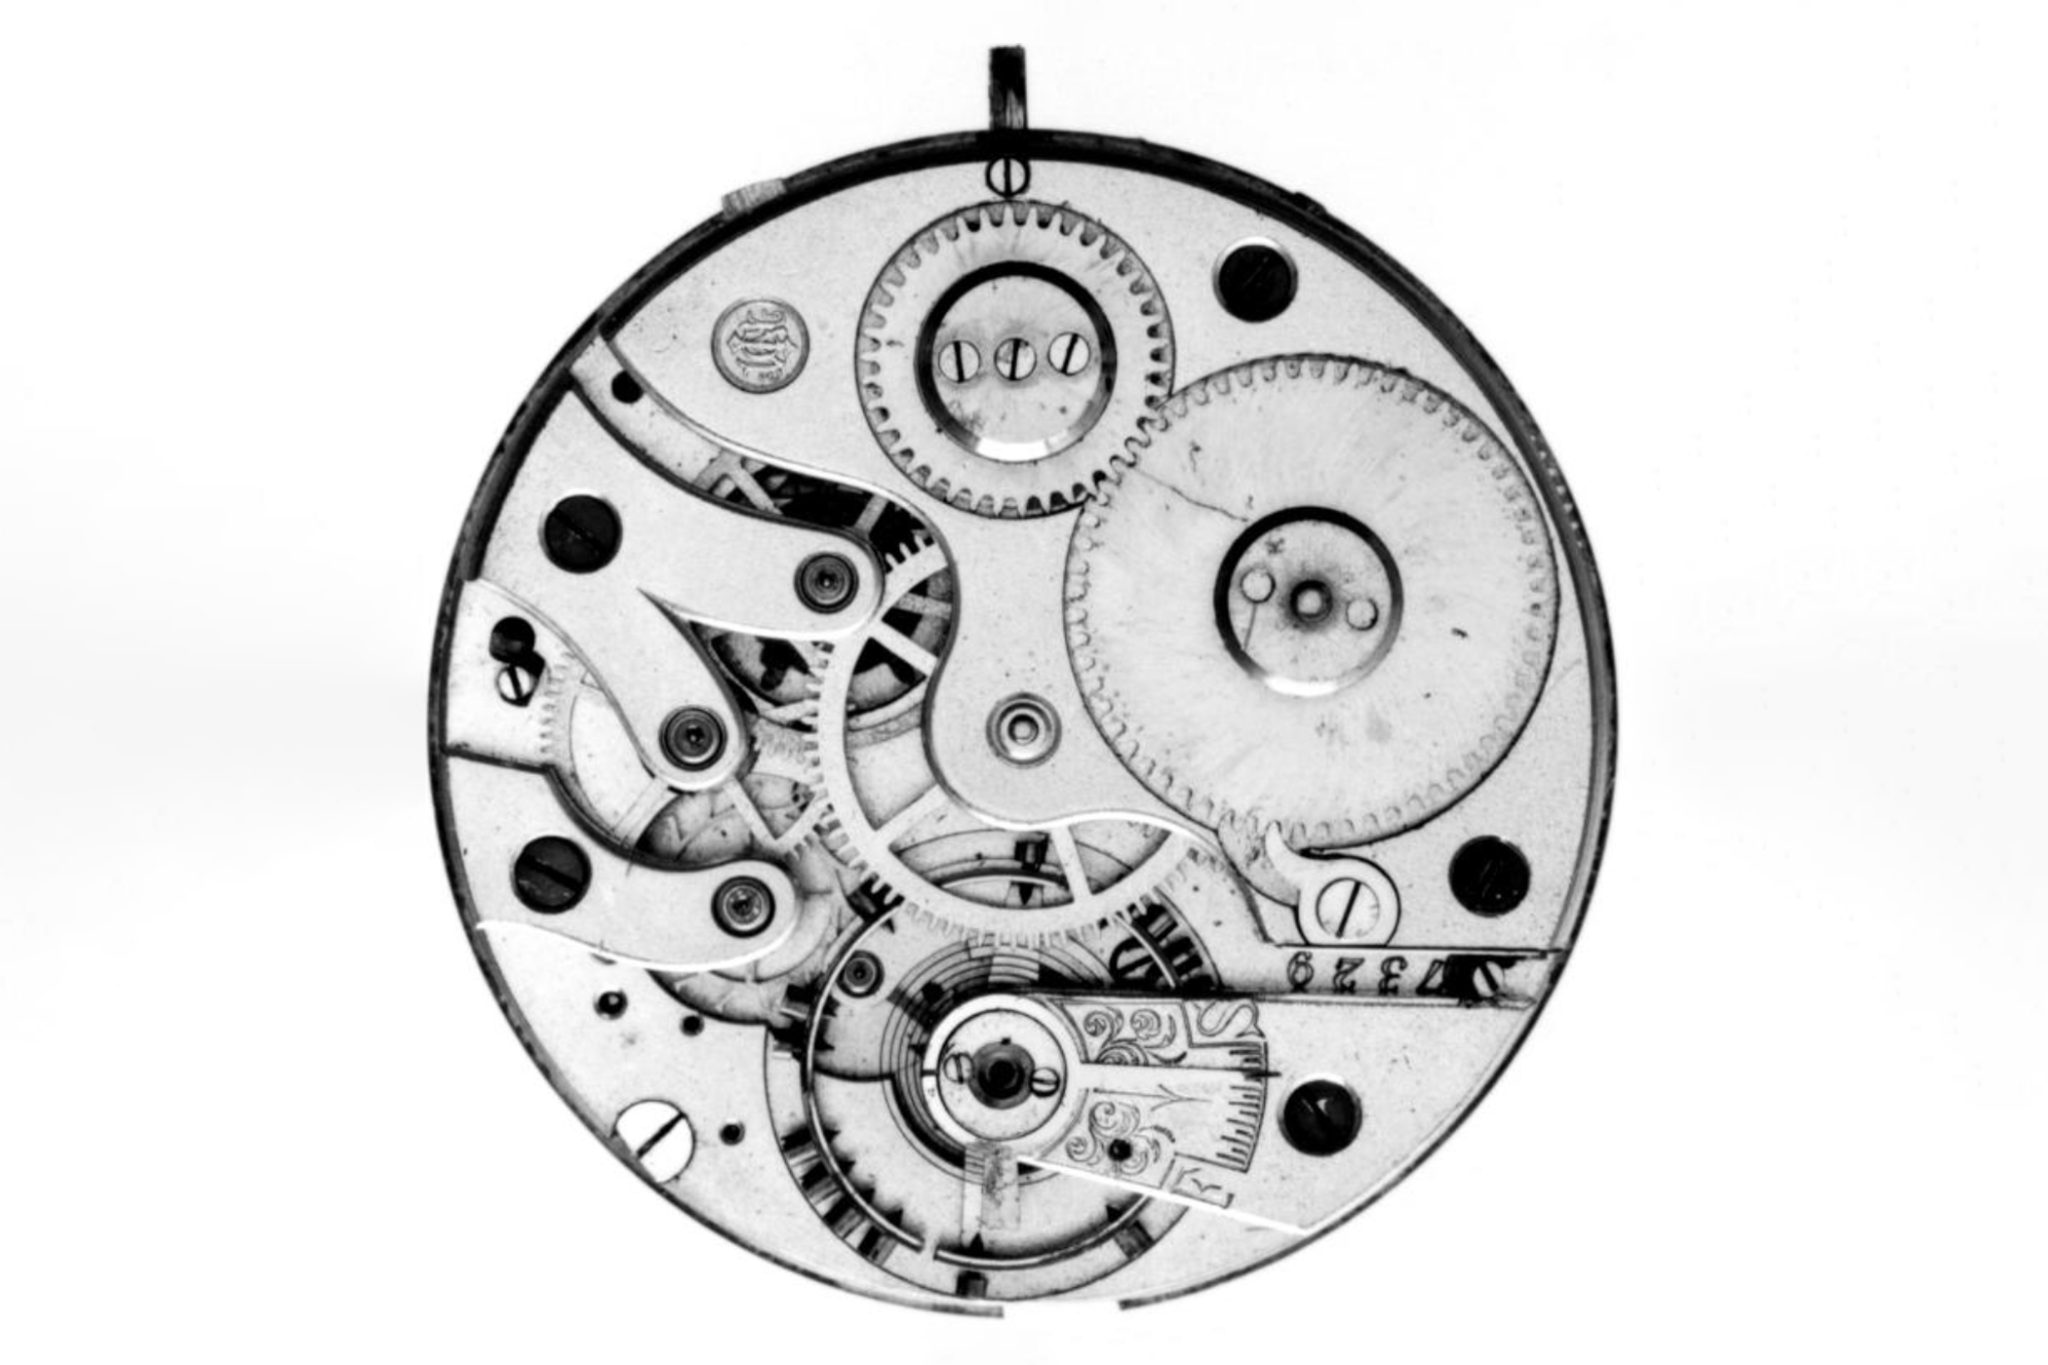 Sprung-Stundenuhr-Der-International-Watch-Company-1885-1895-Uhrwerk